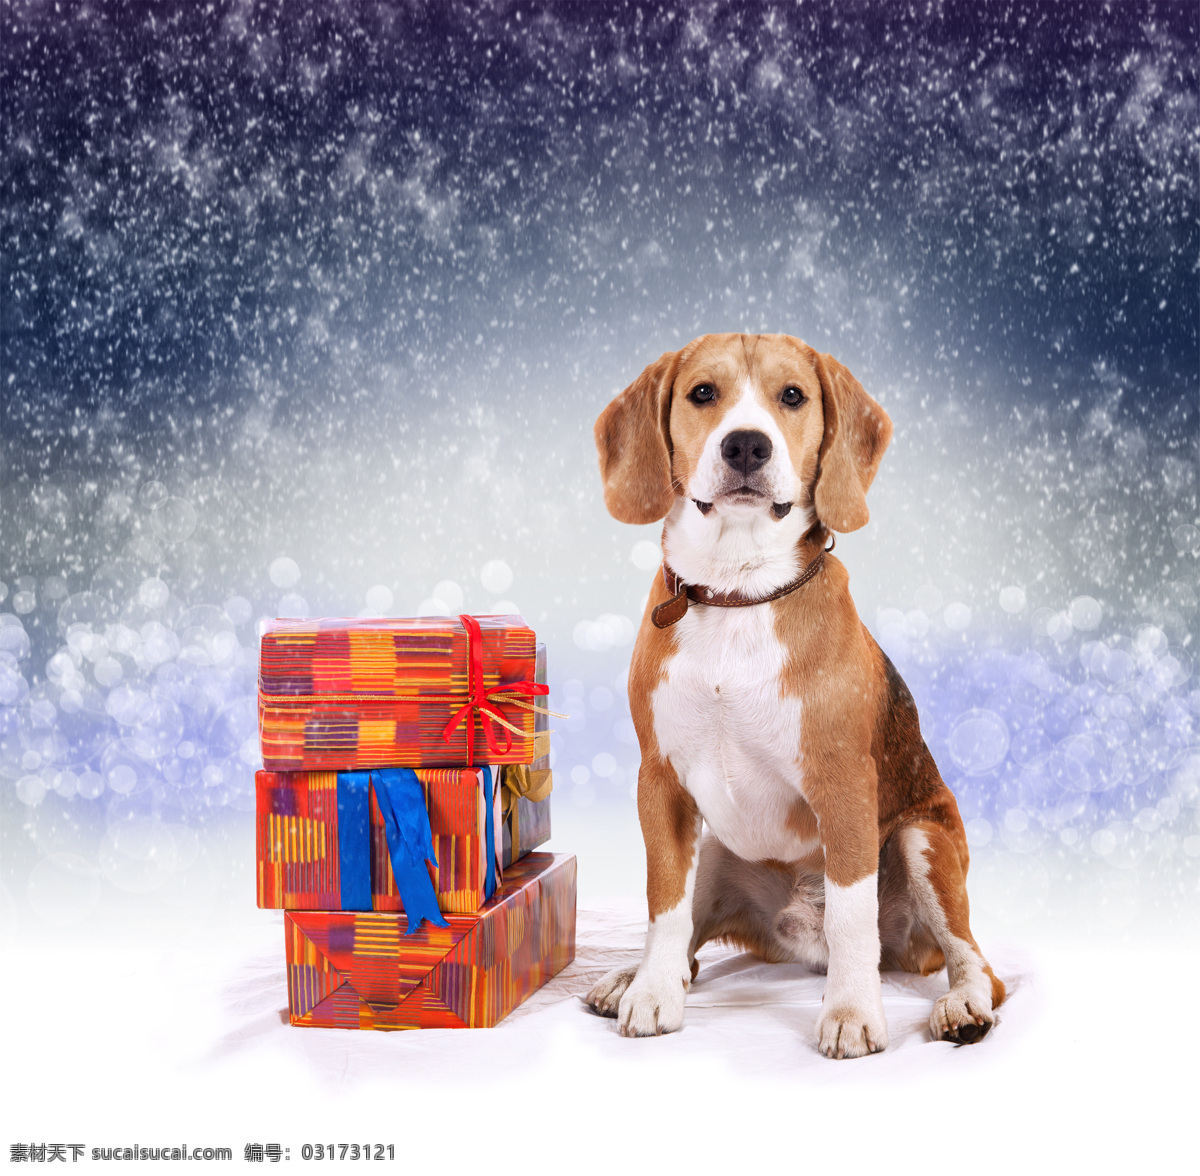 礼物 盒 小狗 礼物盒 圣诞动物 动物 圣诞节 狗狗图片 生物世界